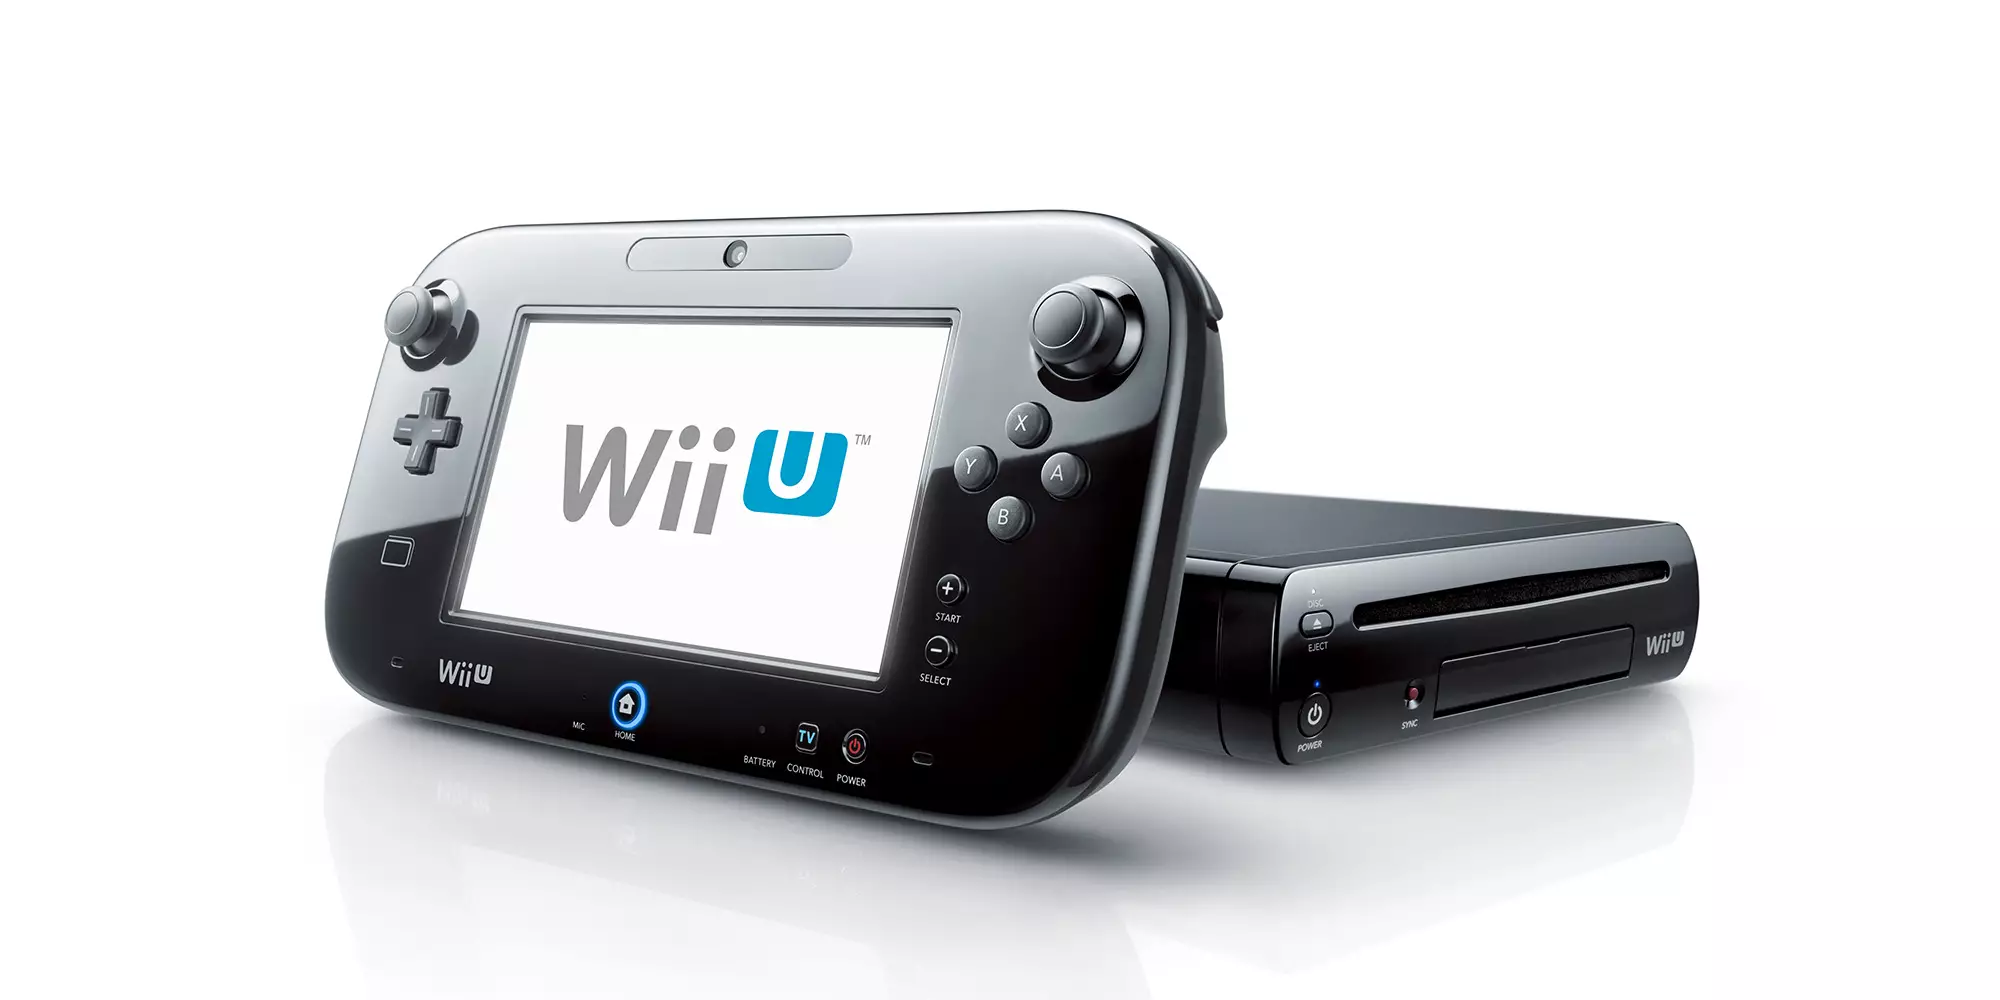 The Premium, 32GB version of the Wii U /